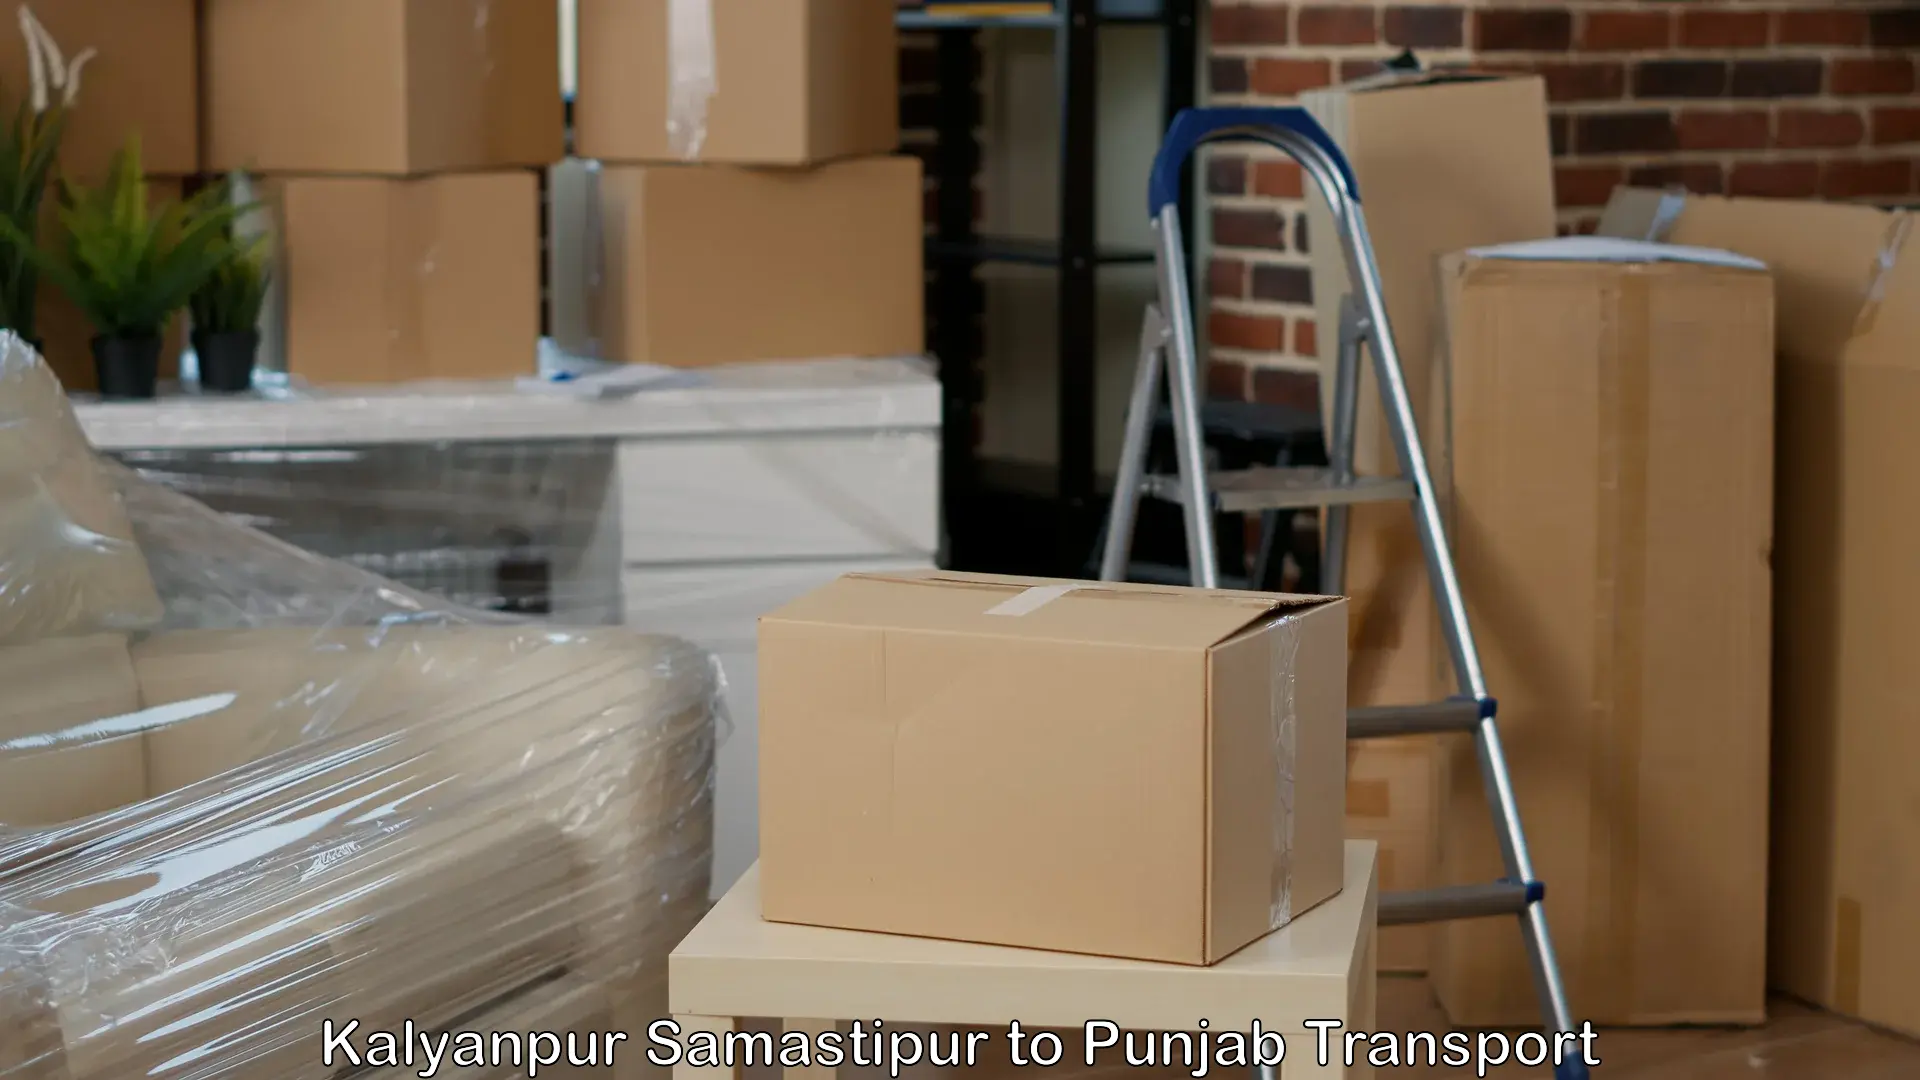 Shipping services Kalyanpur Samastipur to Adampur Jalandhar